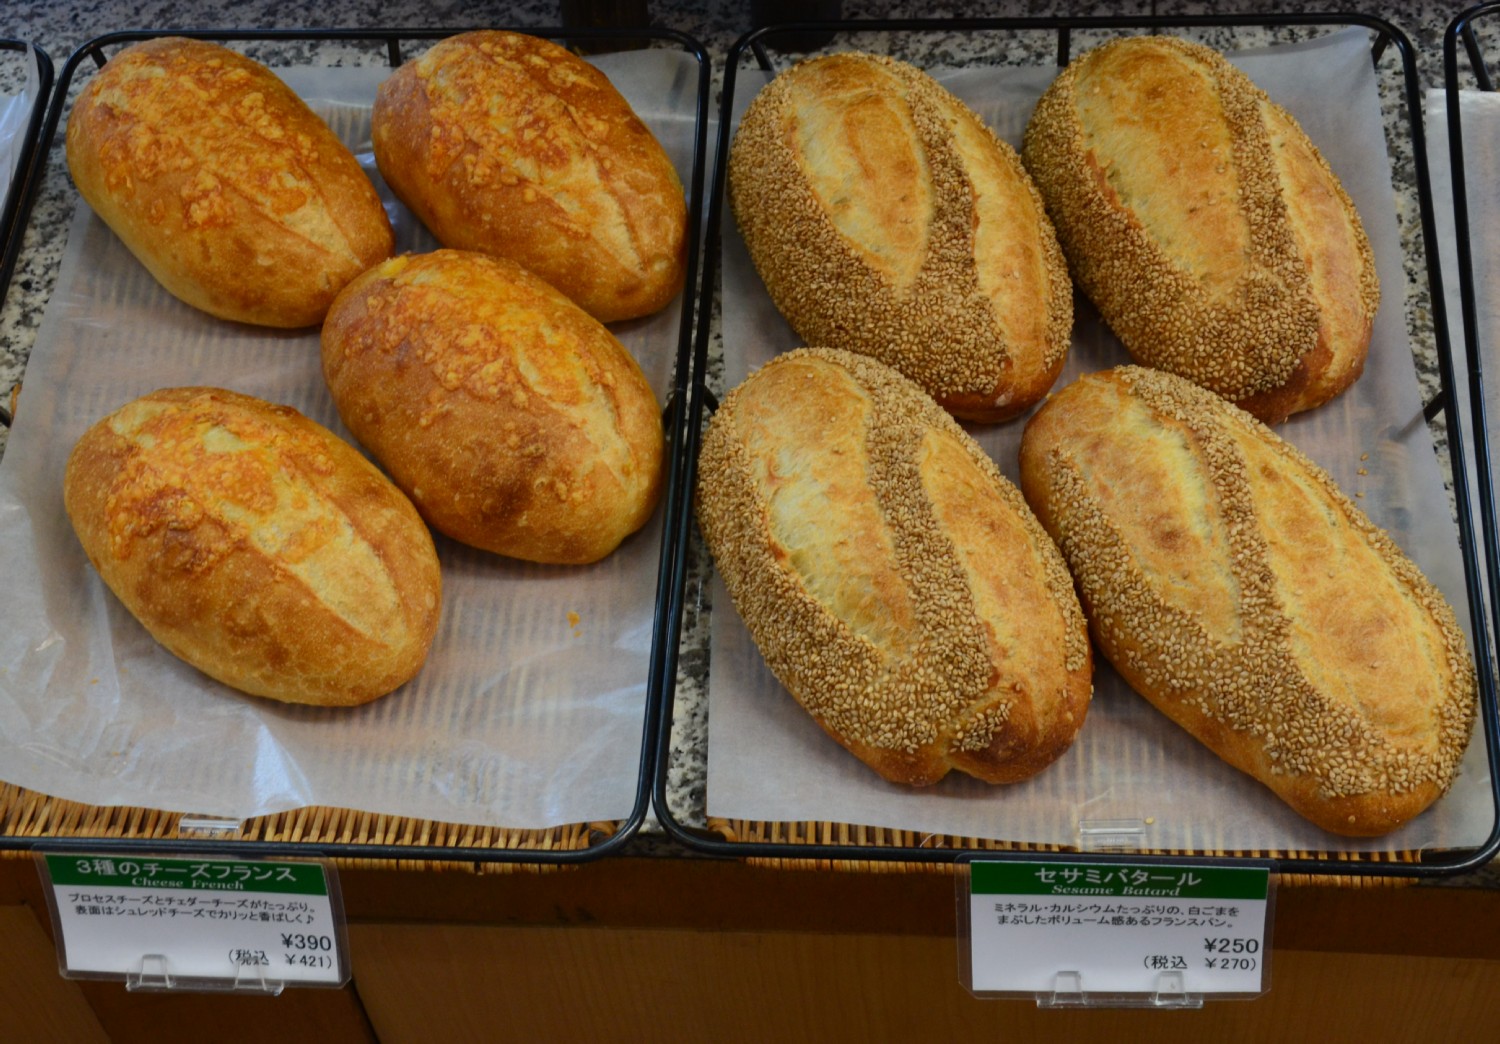 sajtos es szezamos kenyerkek, nem vettunk meg, nem tudom mekkorak lehetnek, szerintem kisebbek mint fel kg.<br />2 - 3.4 Euro kozott